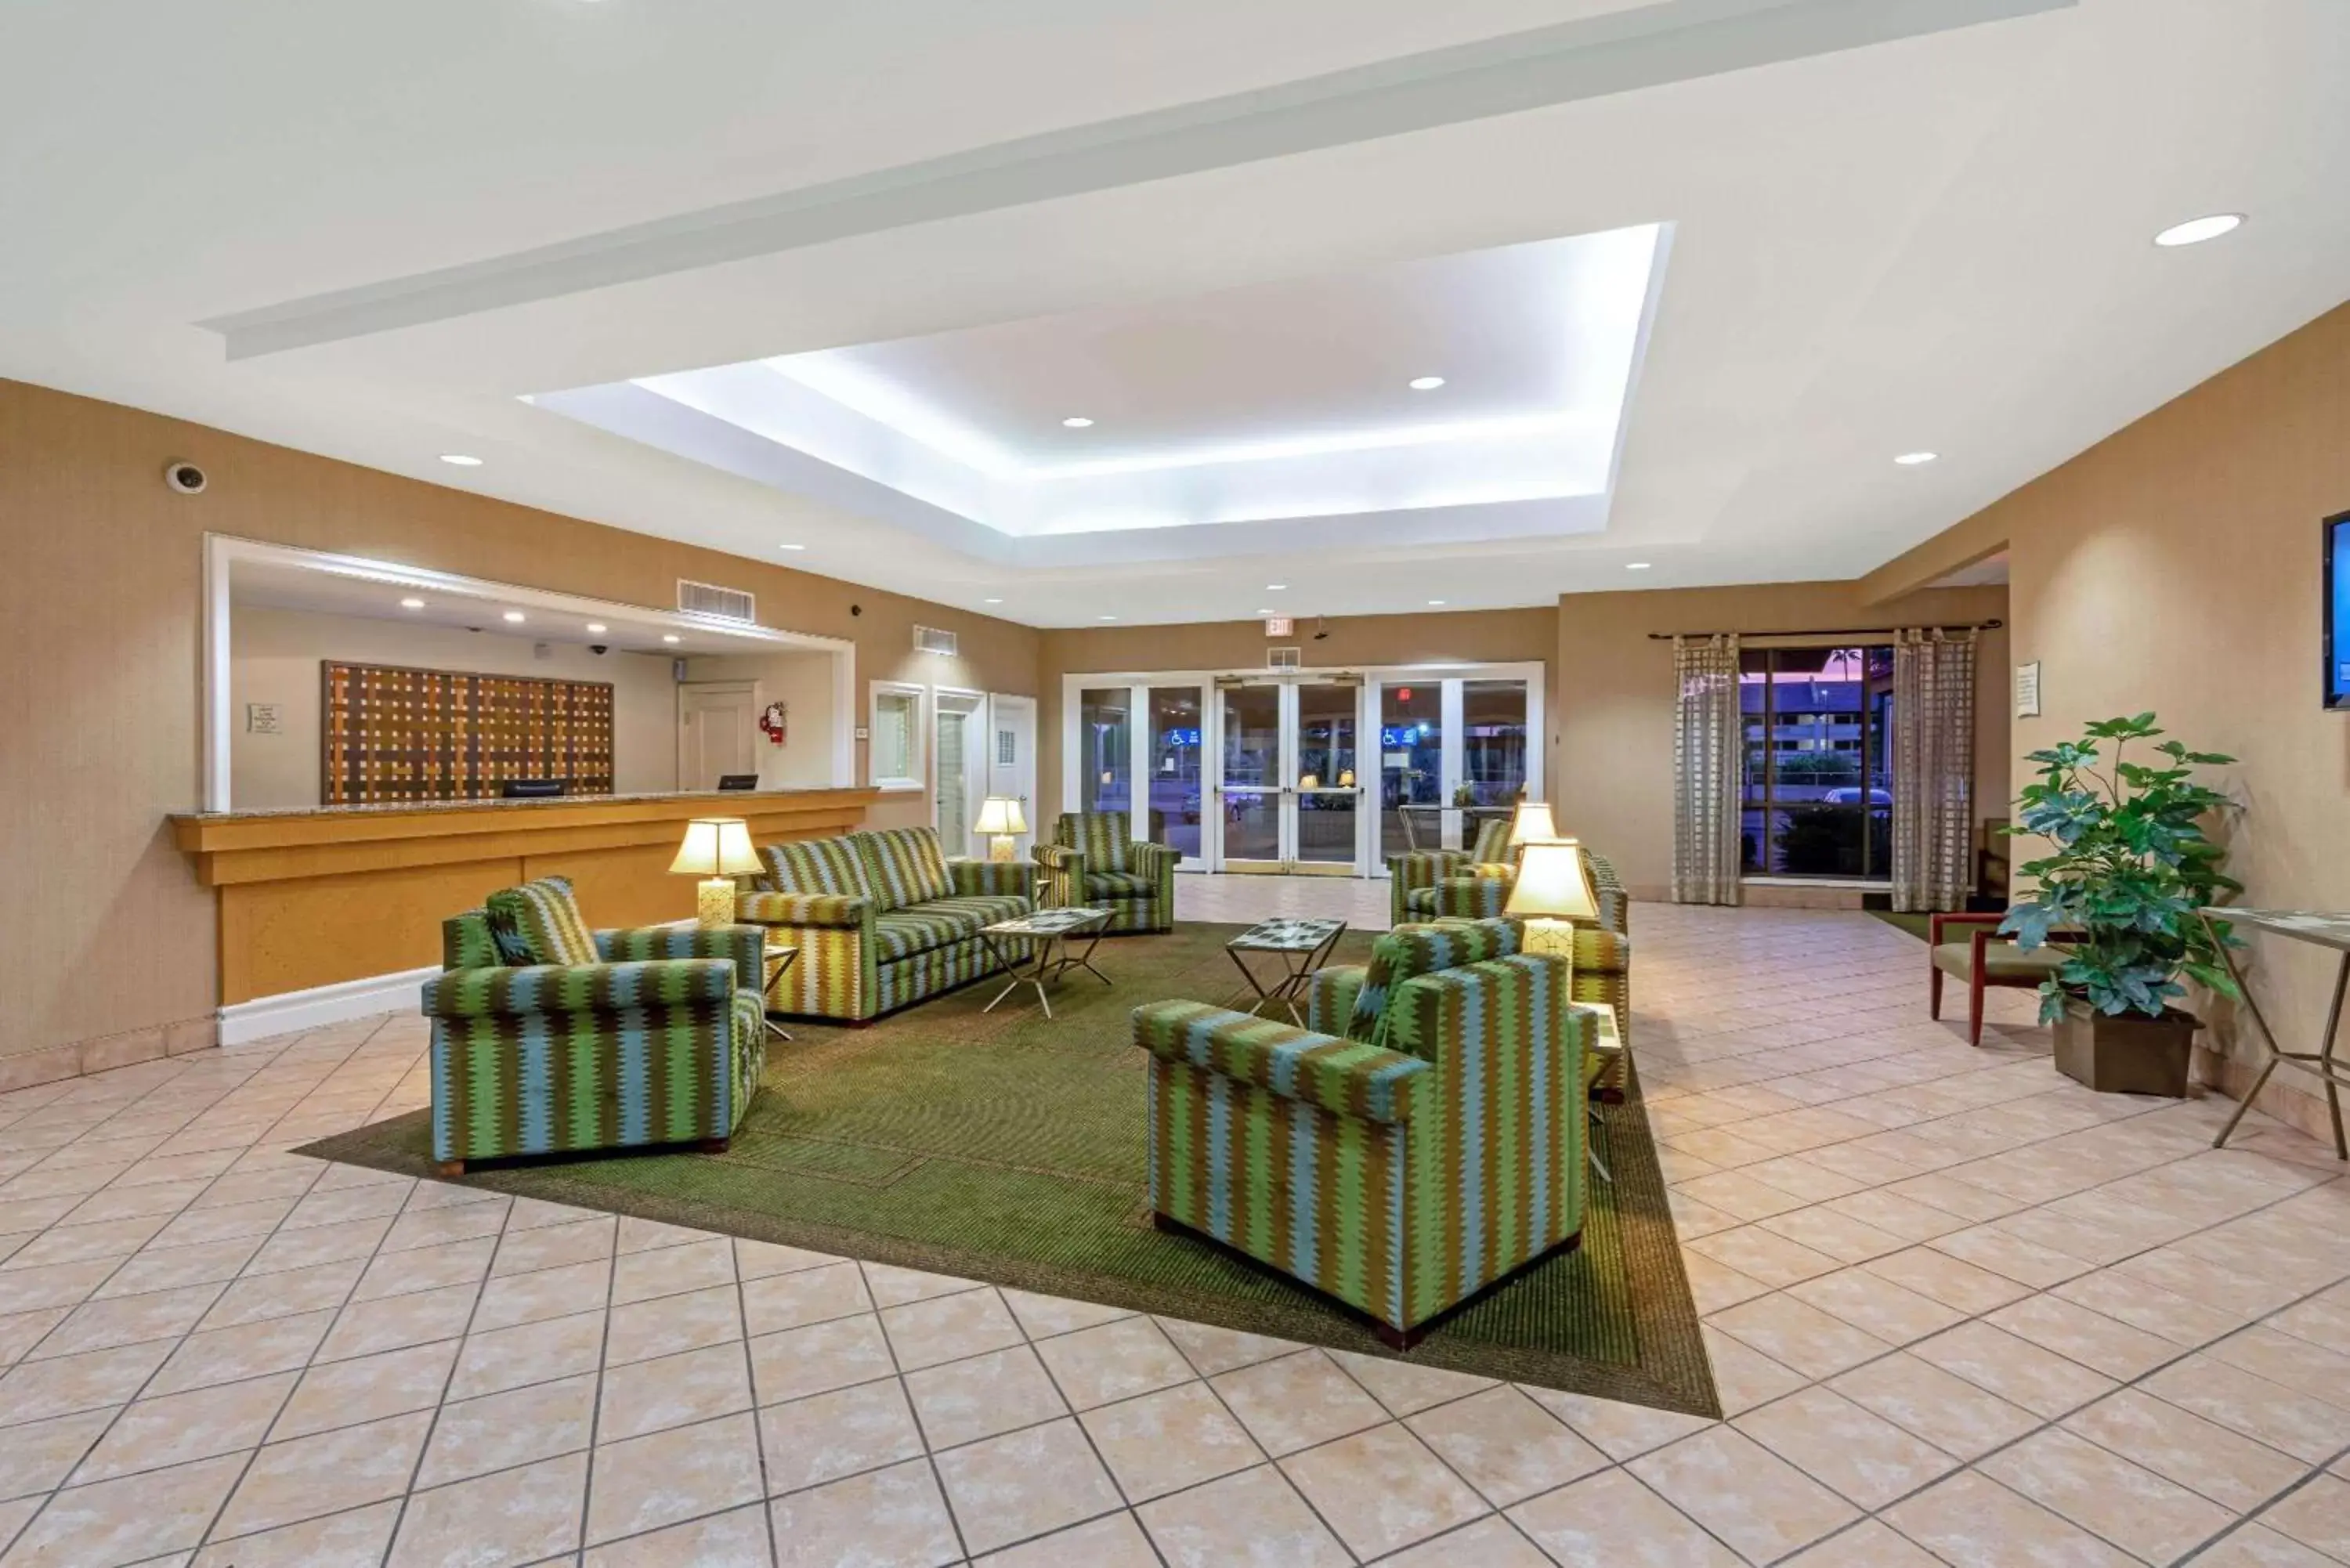 Lobby or reception, Lobby/Reception in La Quinta Inn by Wyndham Phoenix North